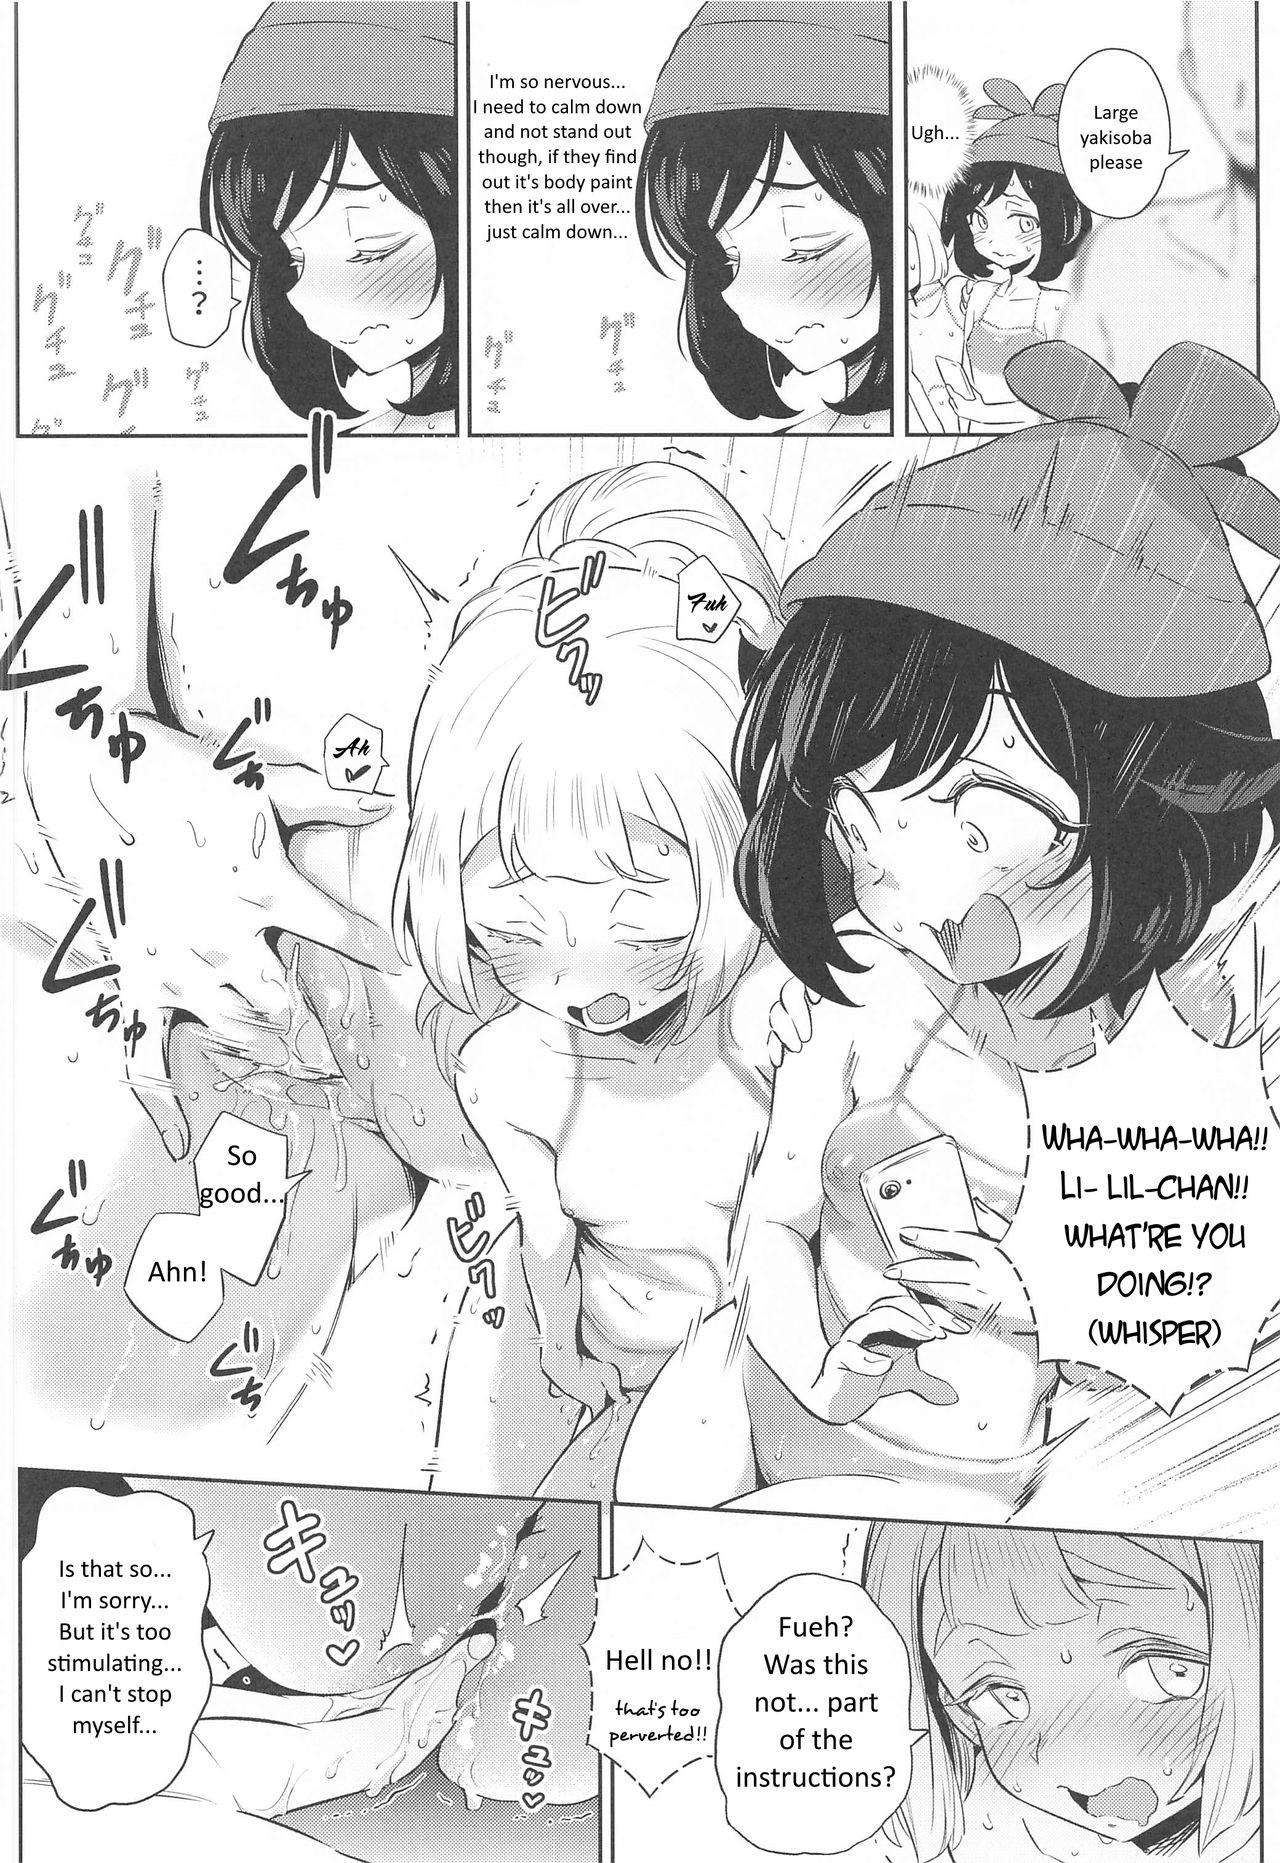 Deflowered Onnanoko-tachi no Himitsu no Bouken 2 - Pokemon | pocket monsters Hardcore - Page 12